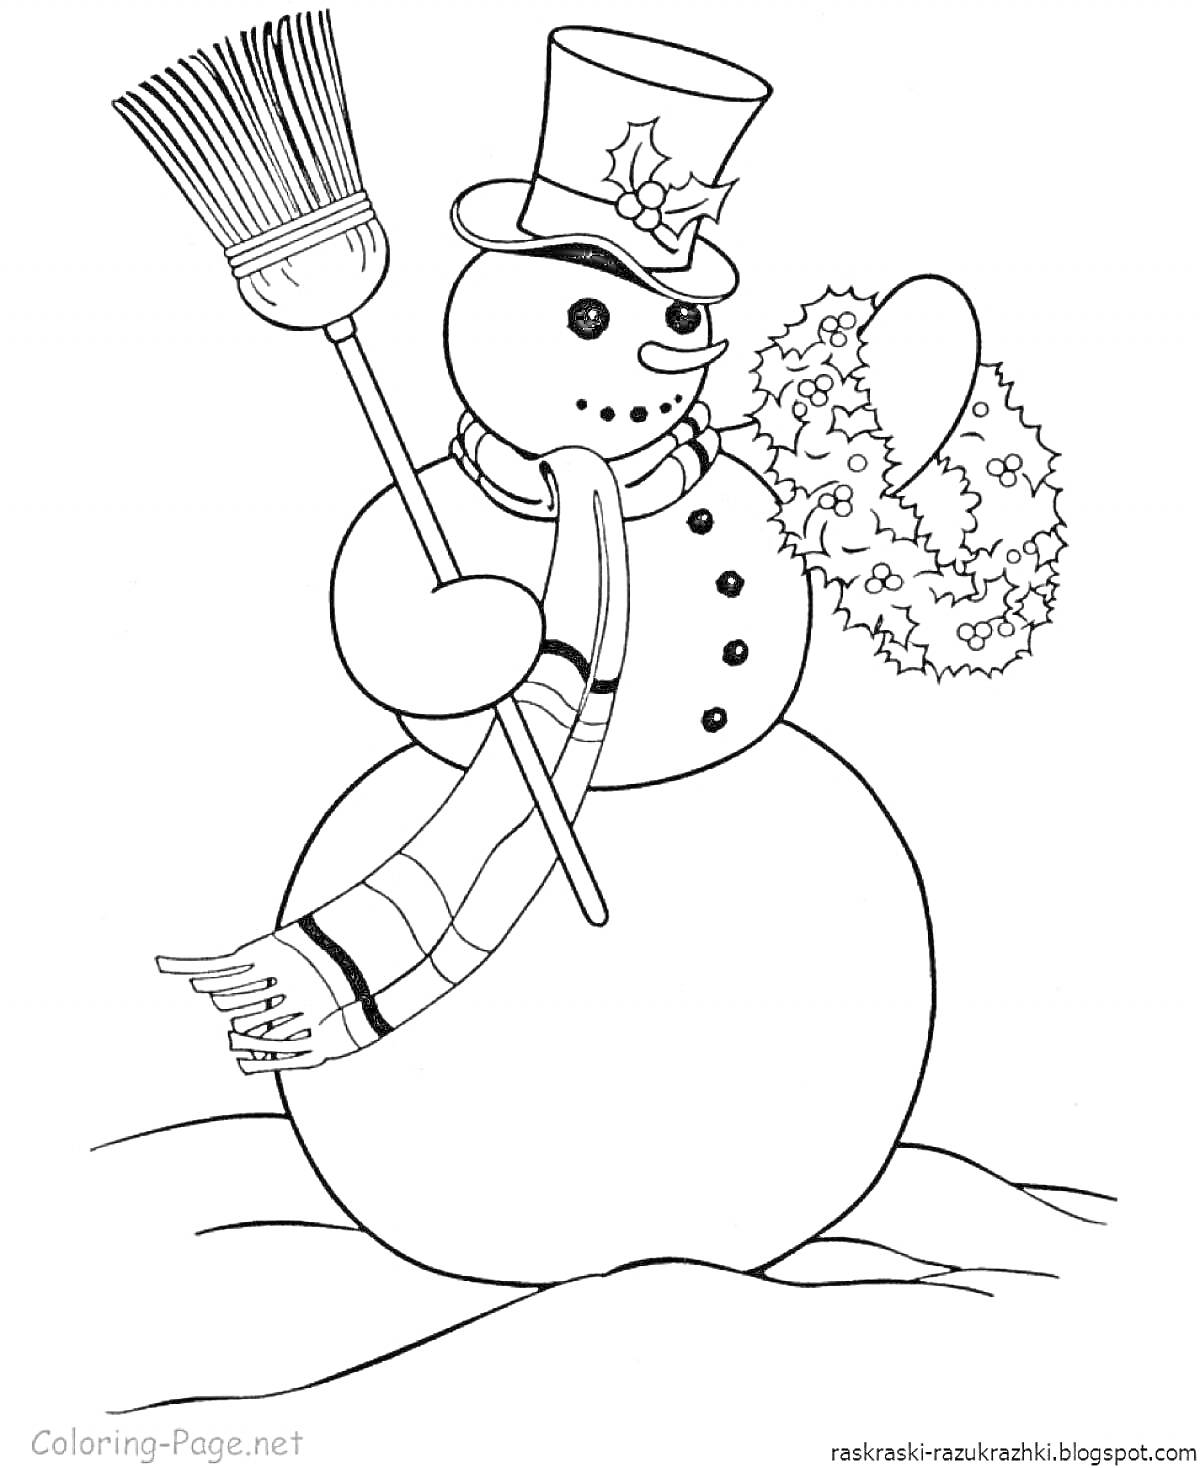 Раскраска Снеговик с метлой, шарфом, шляпой и рождественским венком на снежной поляне